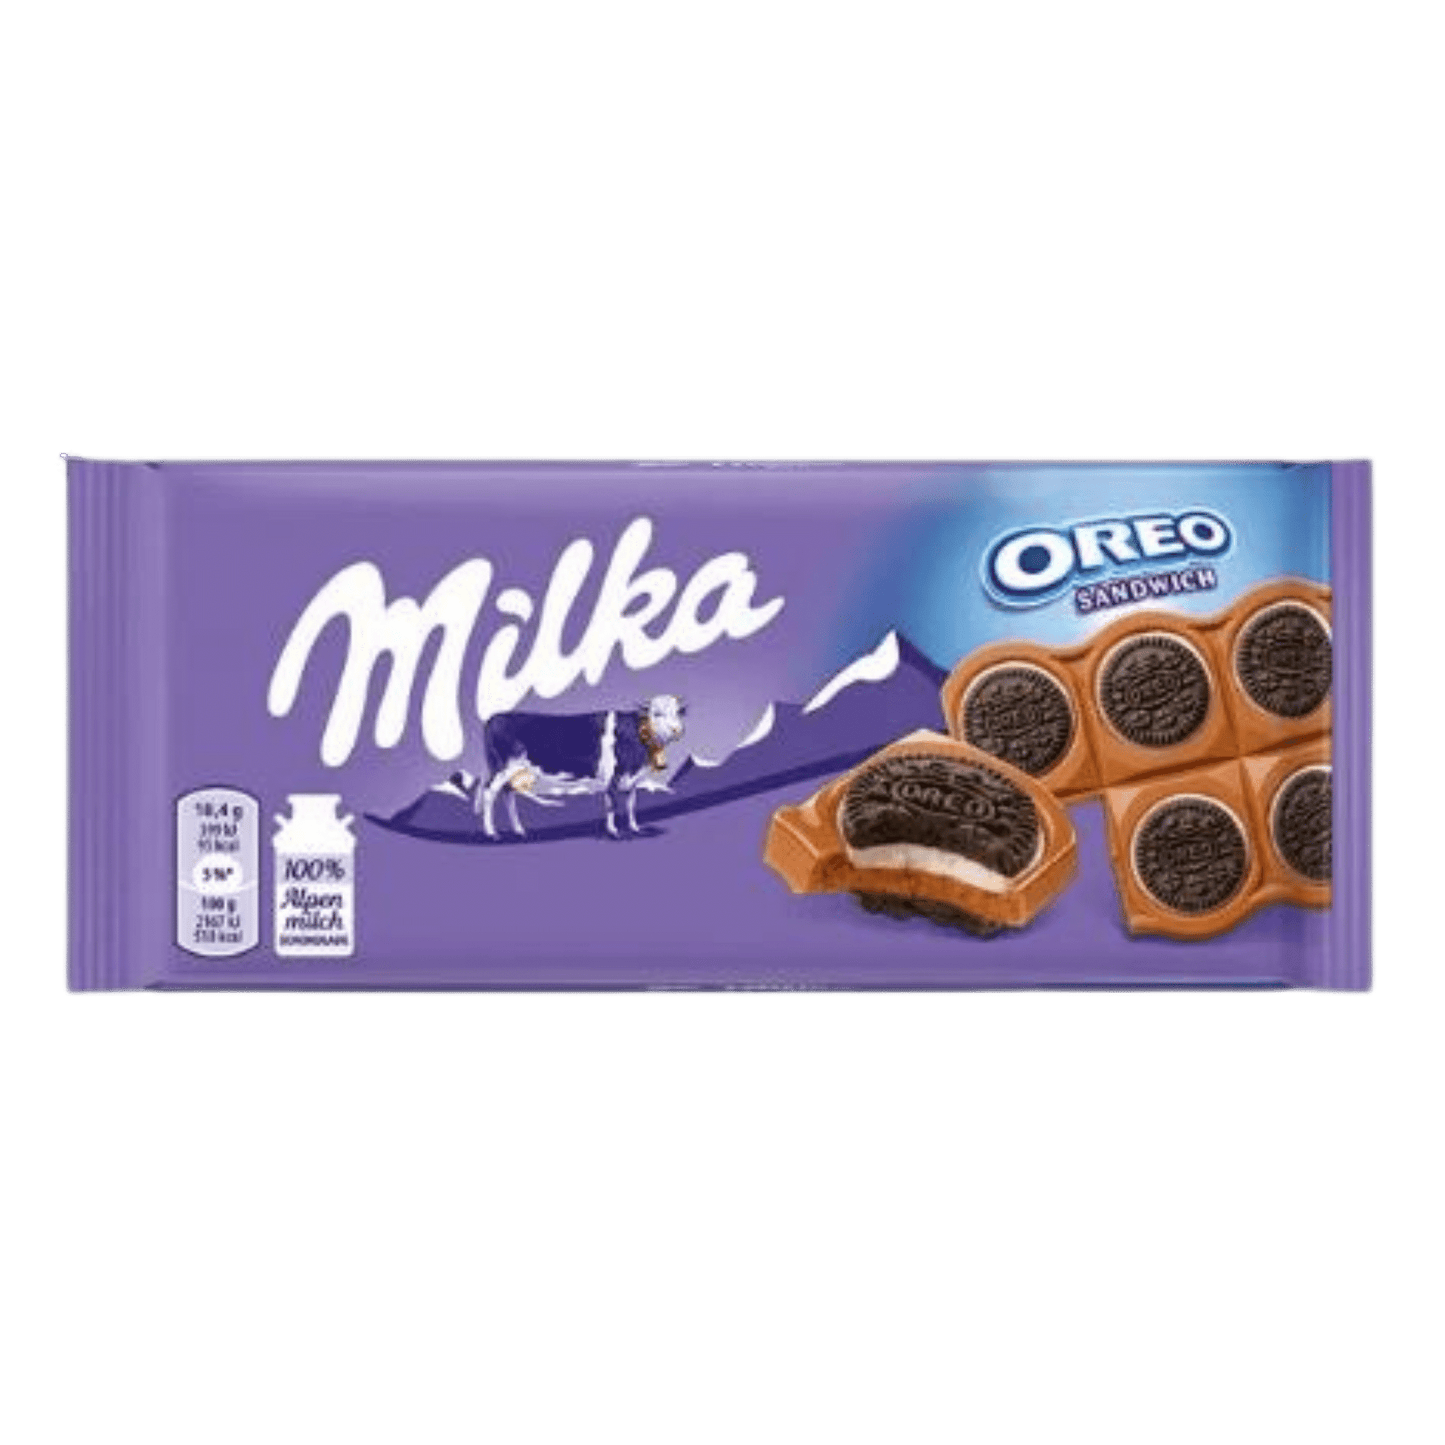 Milka - Oreo Sandwich (16x92g)